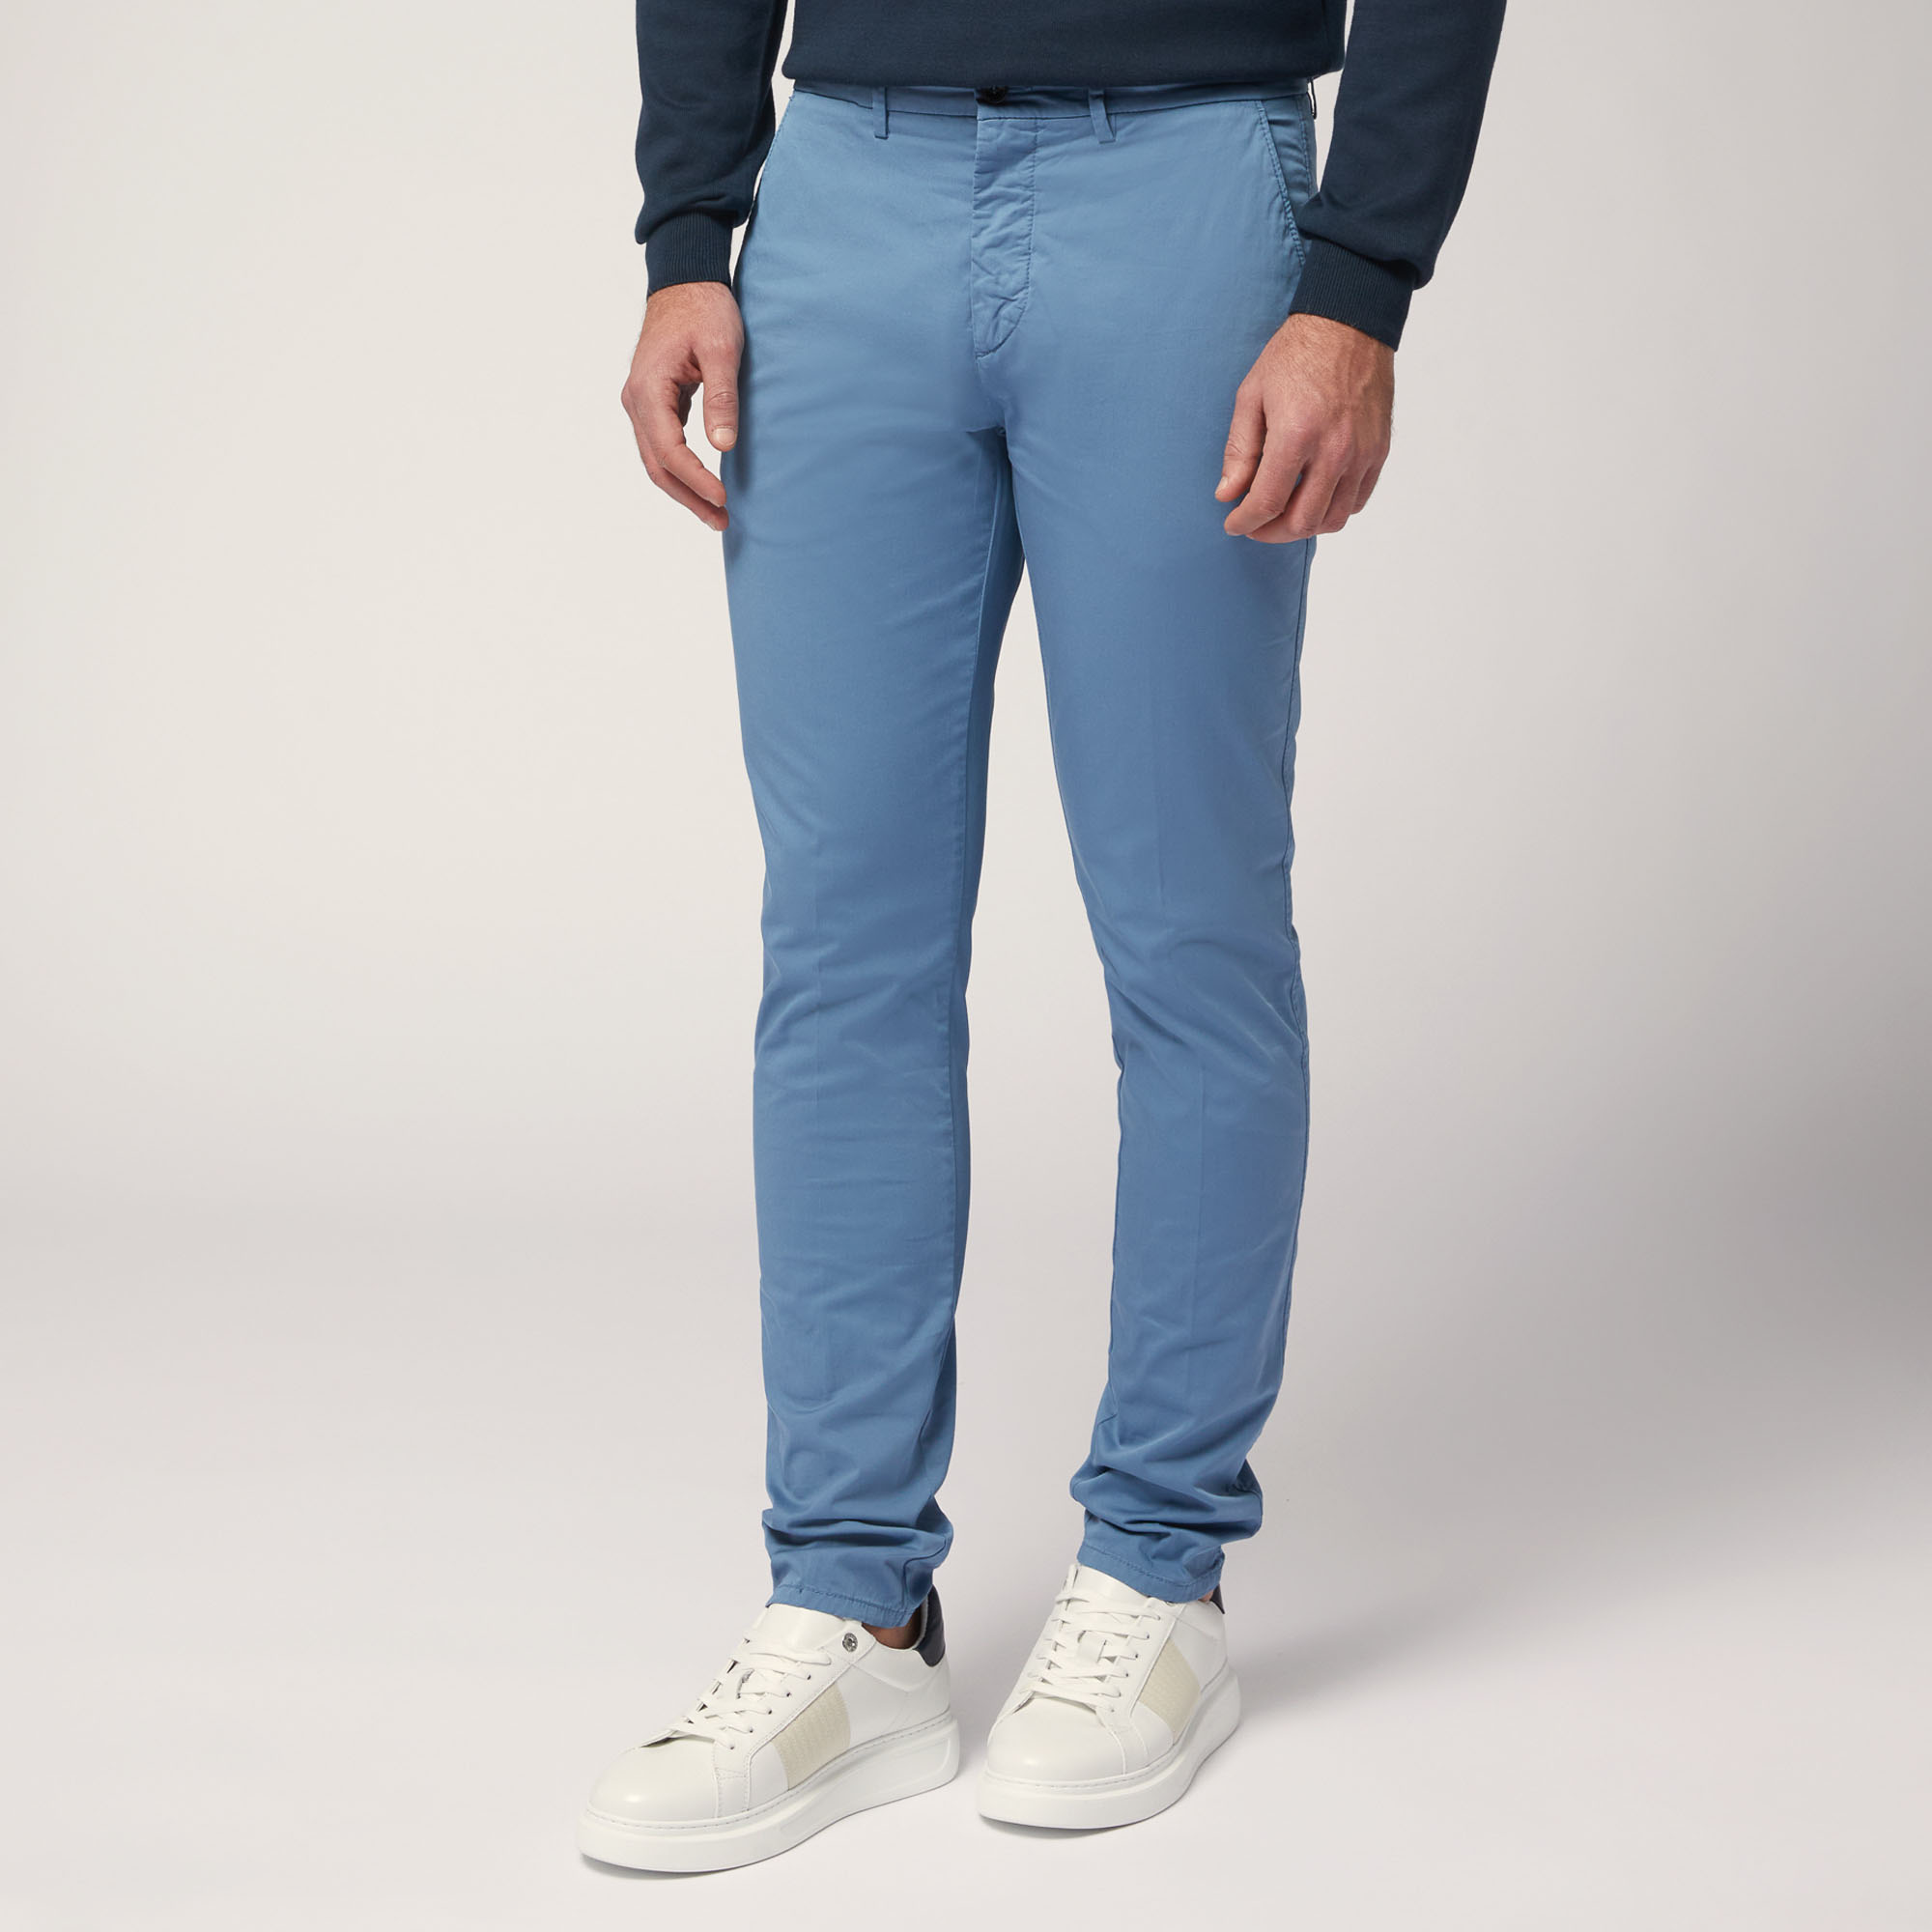 Pantaloni Chino Narrow Fit, Blu, large